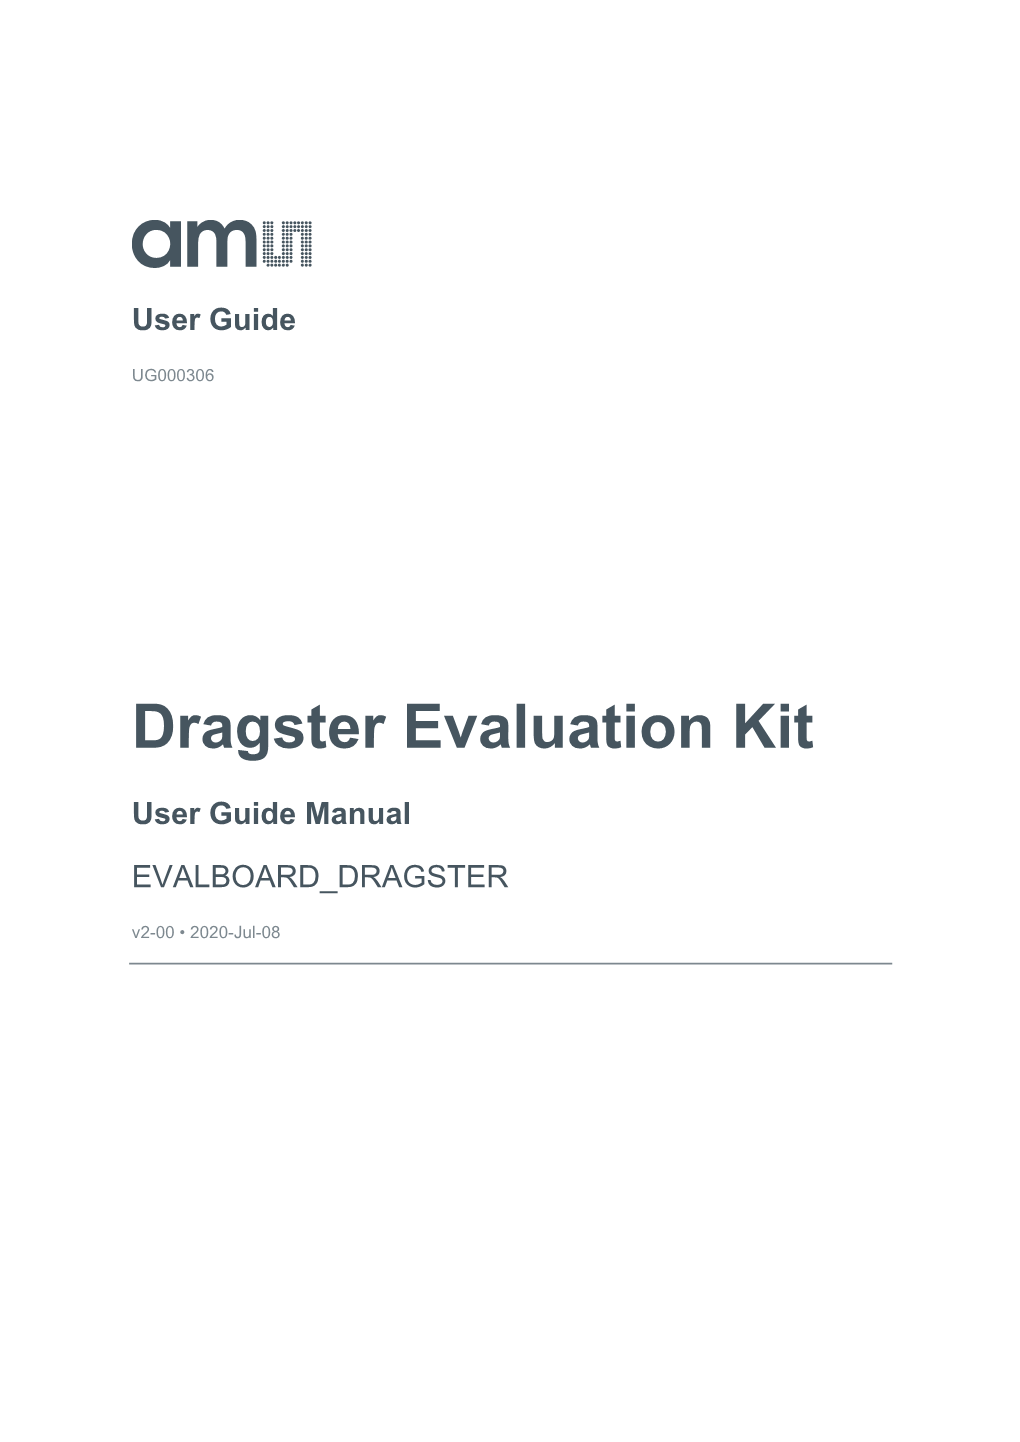 Dragster Evaluation Kit